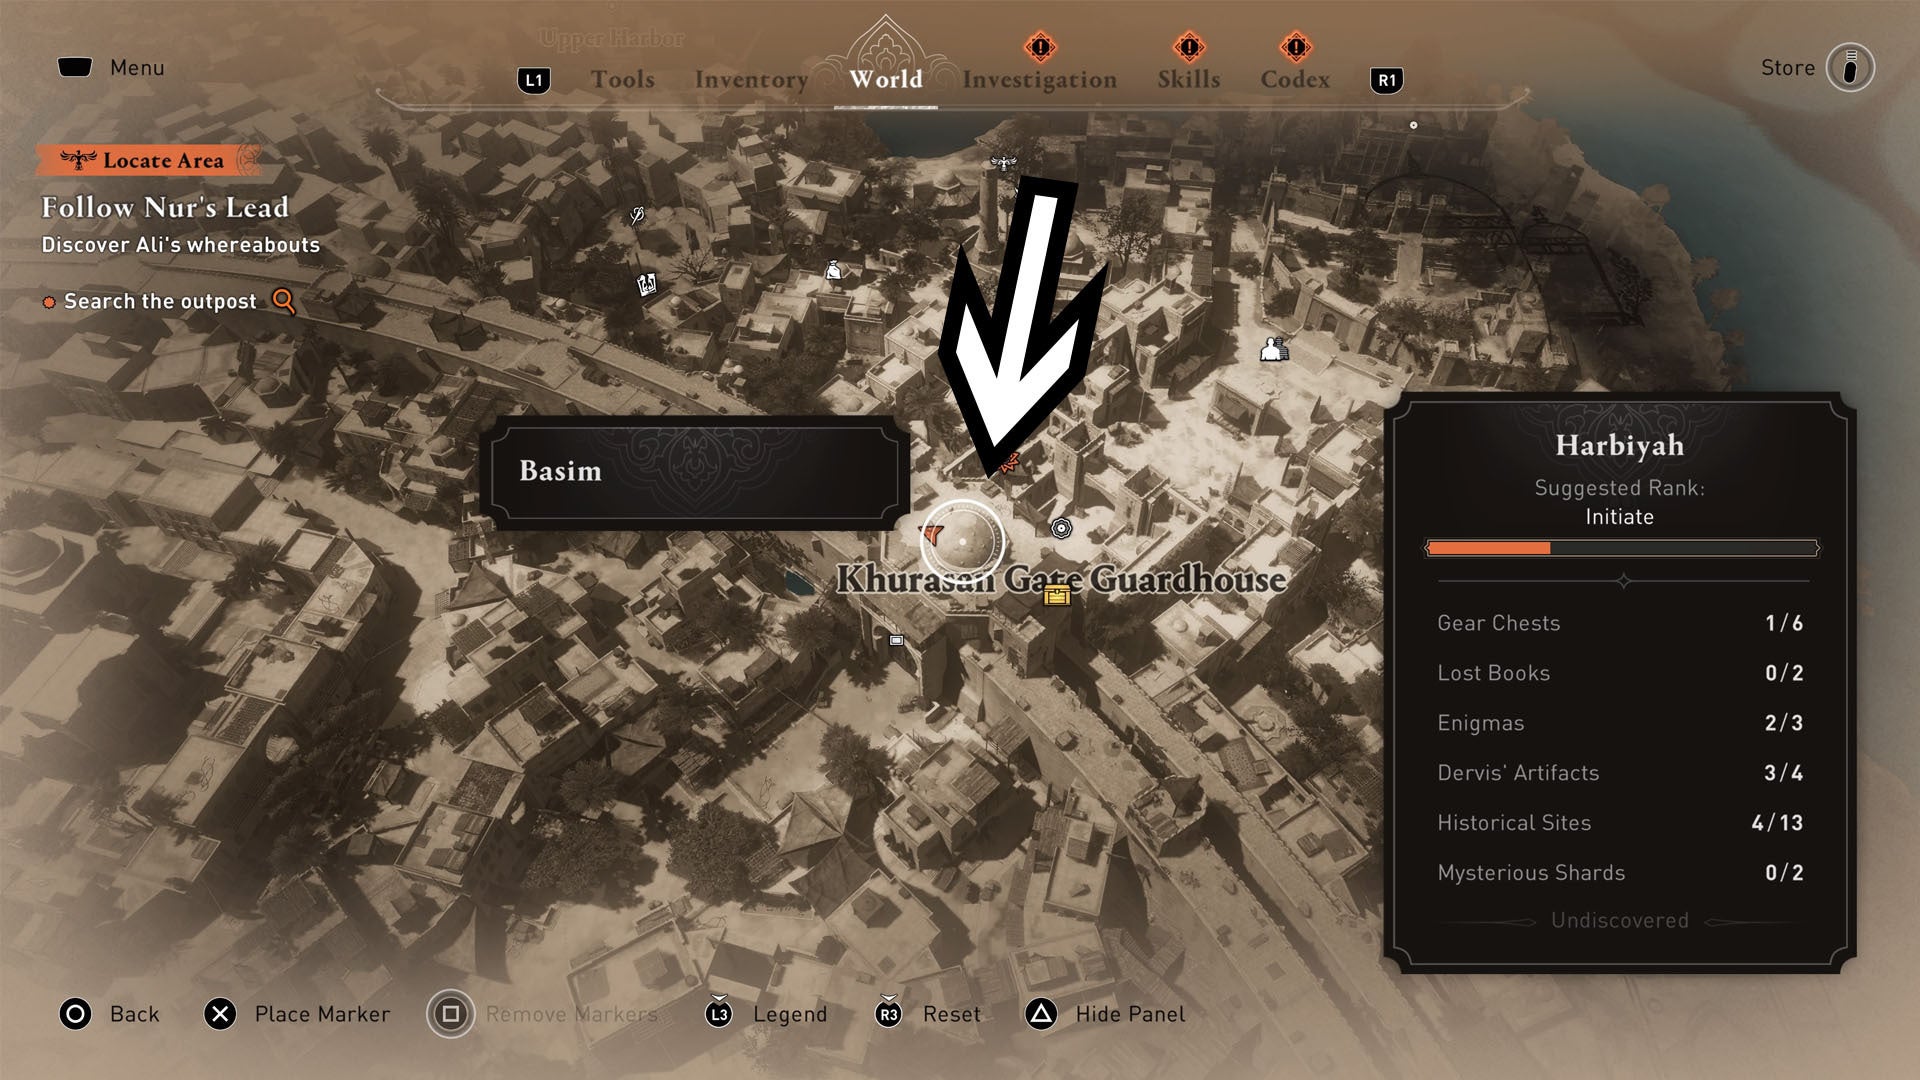 Assassins Creed Mirage, cofre del equipo de la caseta de vigilancia de la puerta de Khurasan cerca de la ubicación del mapa con una flecha apuntando a un techo arribadado.